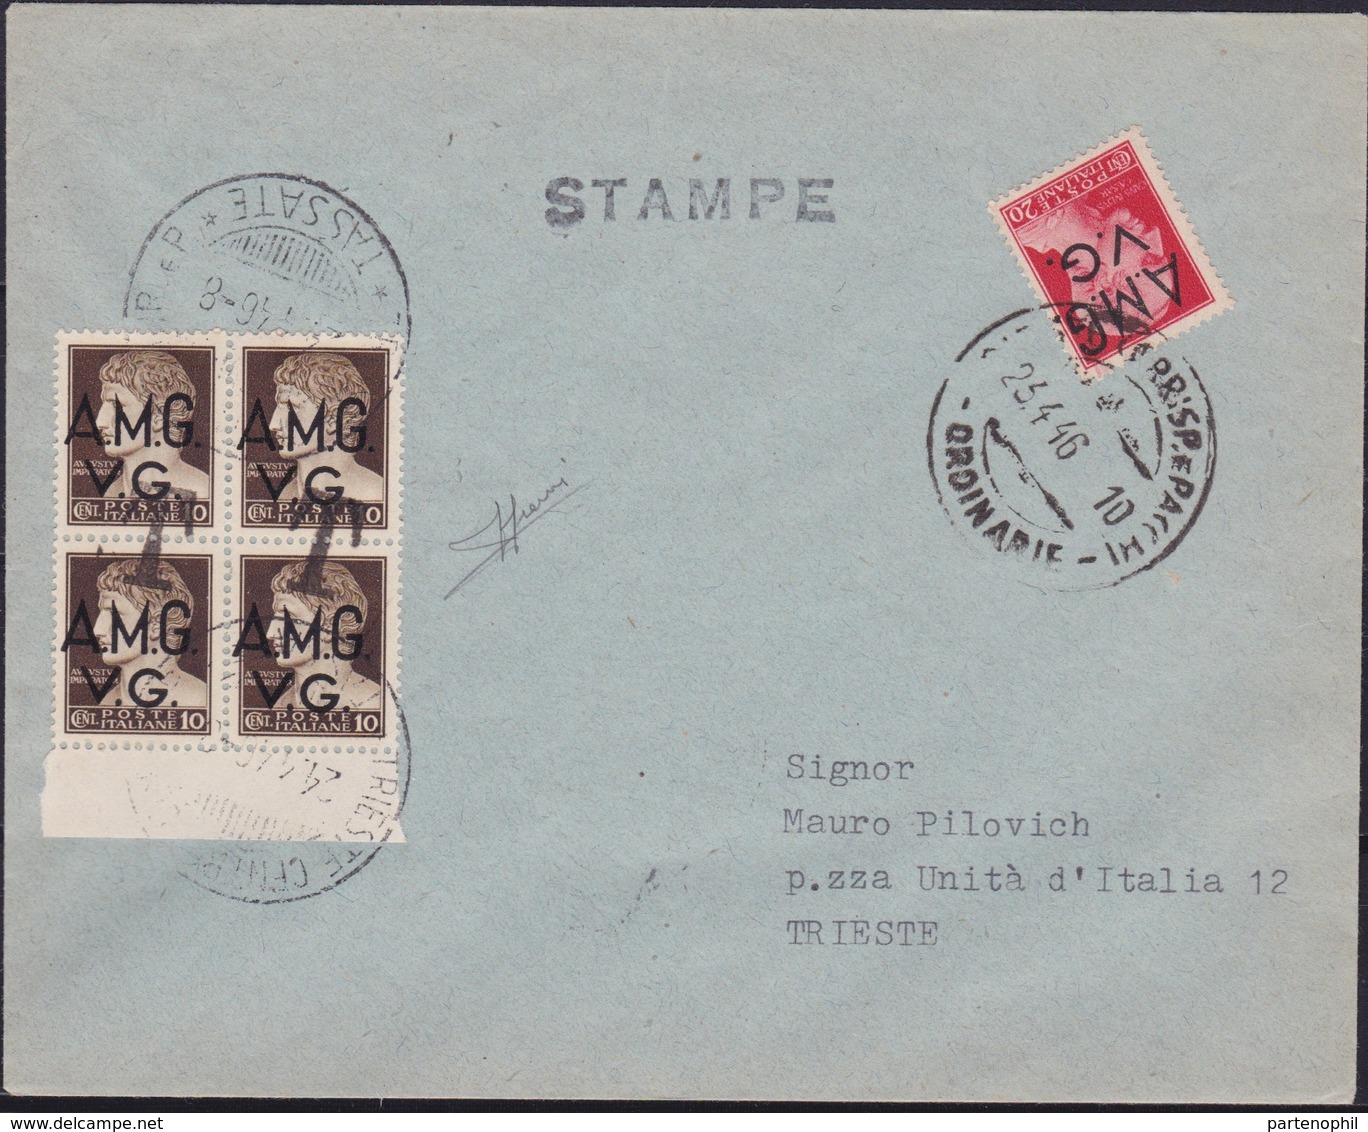 Venezia Giulia - 347 * Lettera Per Stampe Da Trieste Del 23.4.46 Per Città, Affrancata Con Imperiale Soprastampati A.M.G - Storia Postale